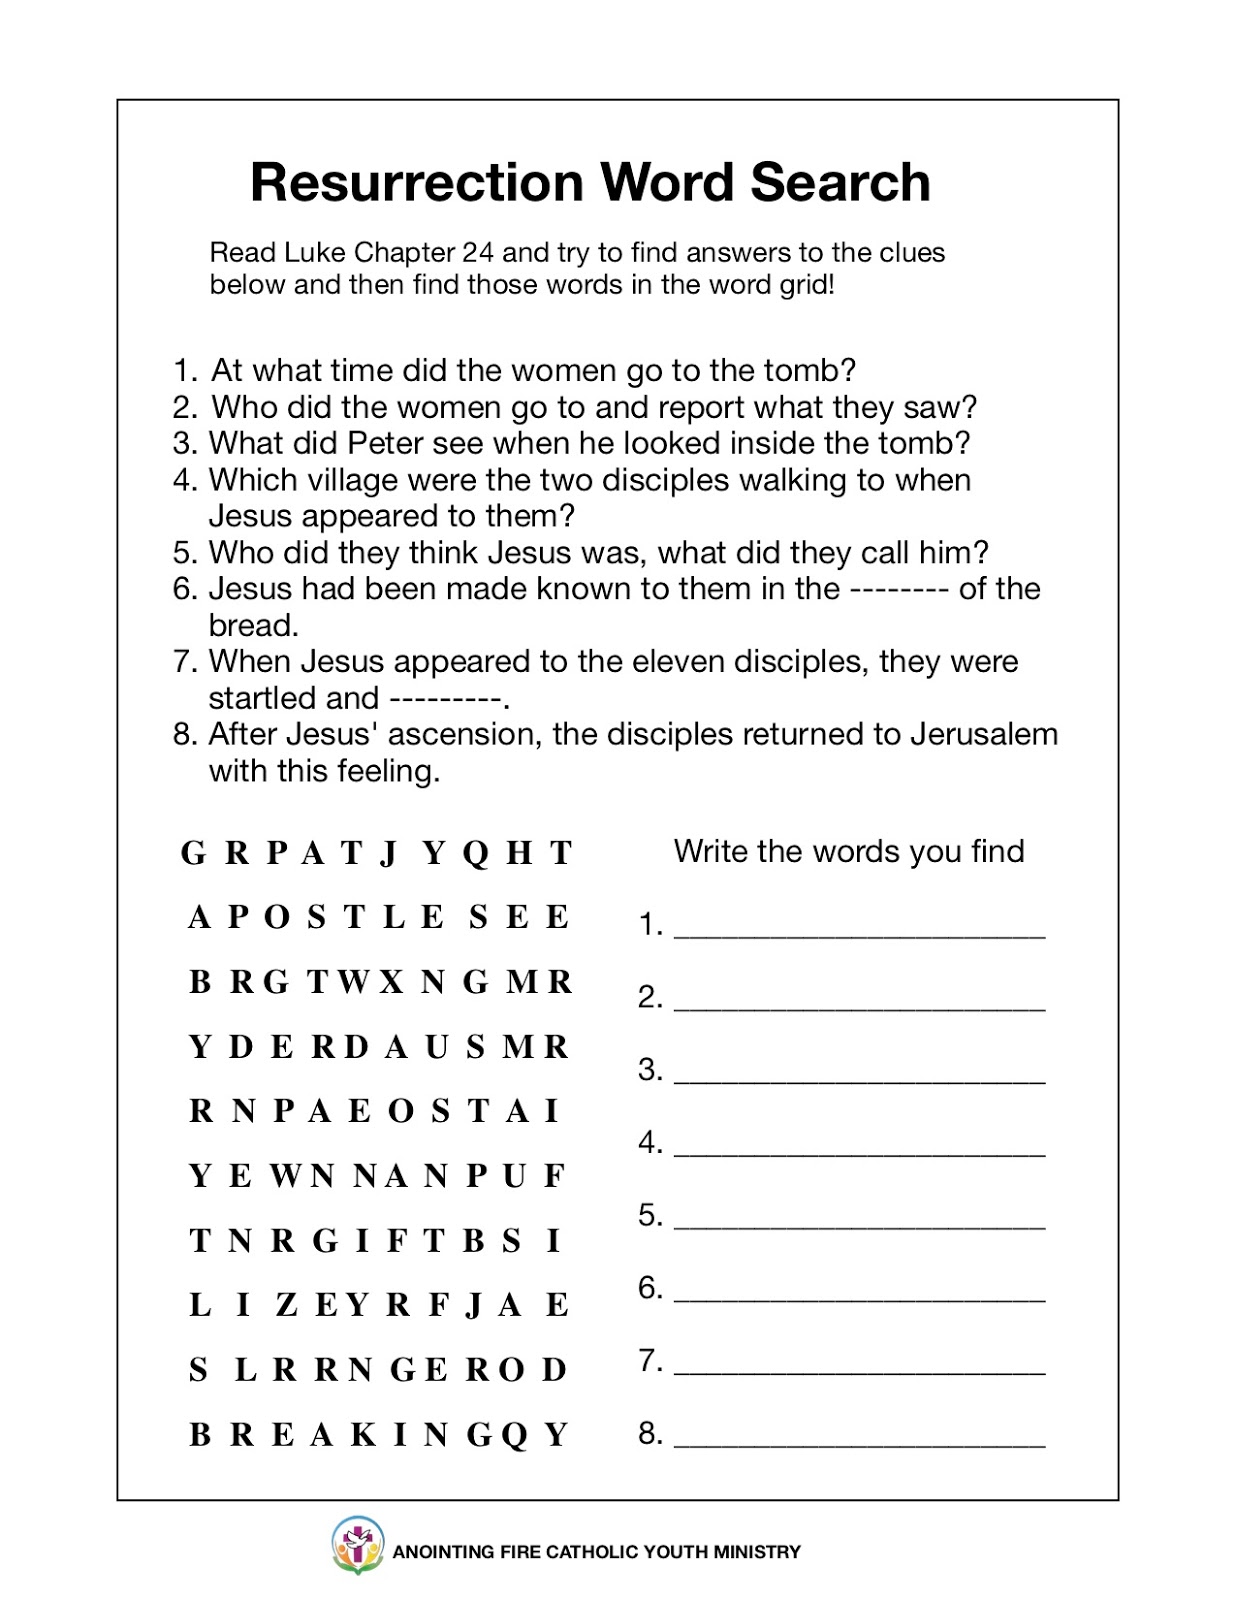 little-evangelist-resurrection-word-search